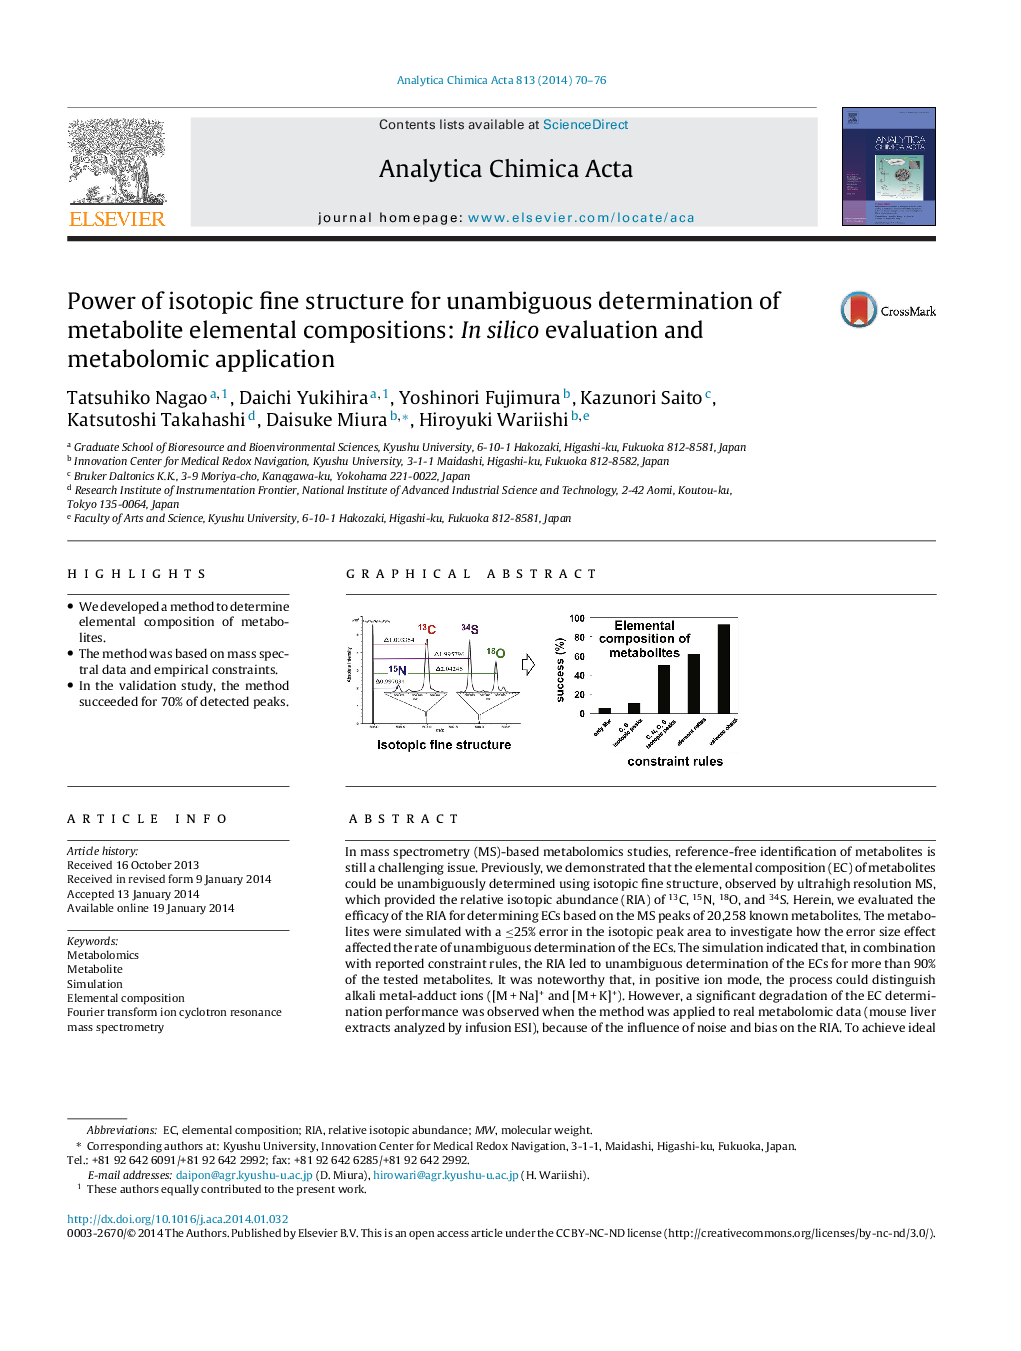 قدرت ساختار خوب ایزوتوپ برای تعیین یکنواختی ترکیبات اصلی متابولیت: در ارزیابی سیلیکا و کاربرد متابولومیک 